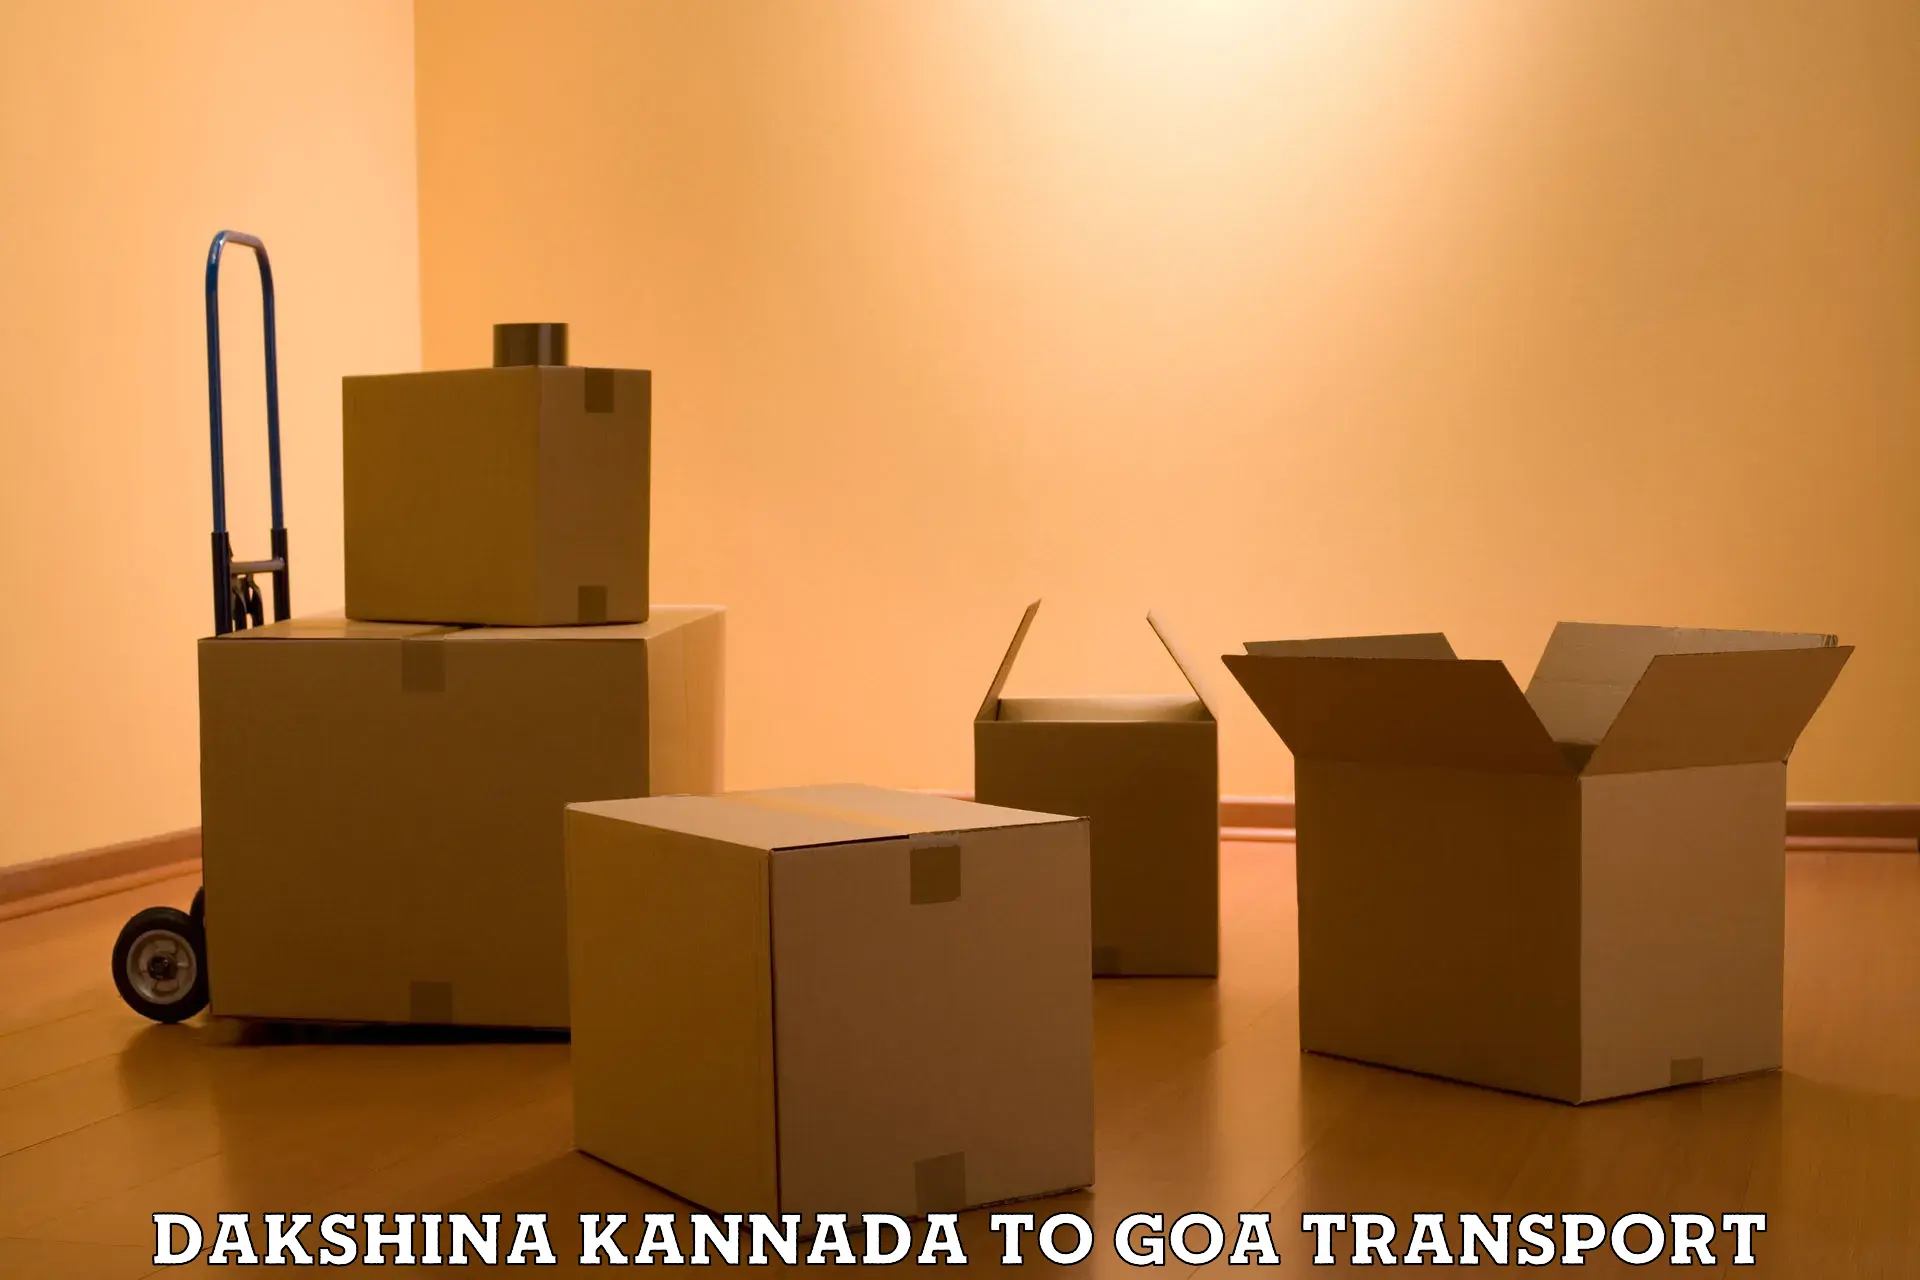 Road transport services Dakshina Kannada to IIT Goa